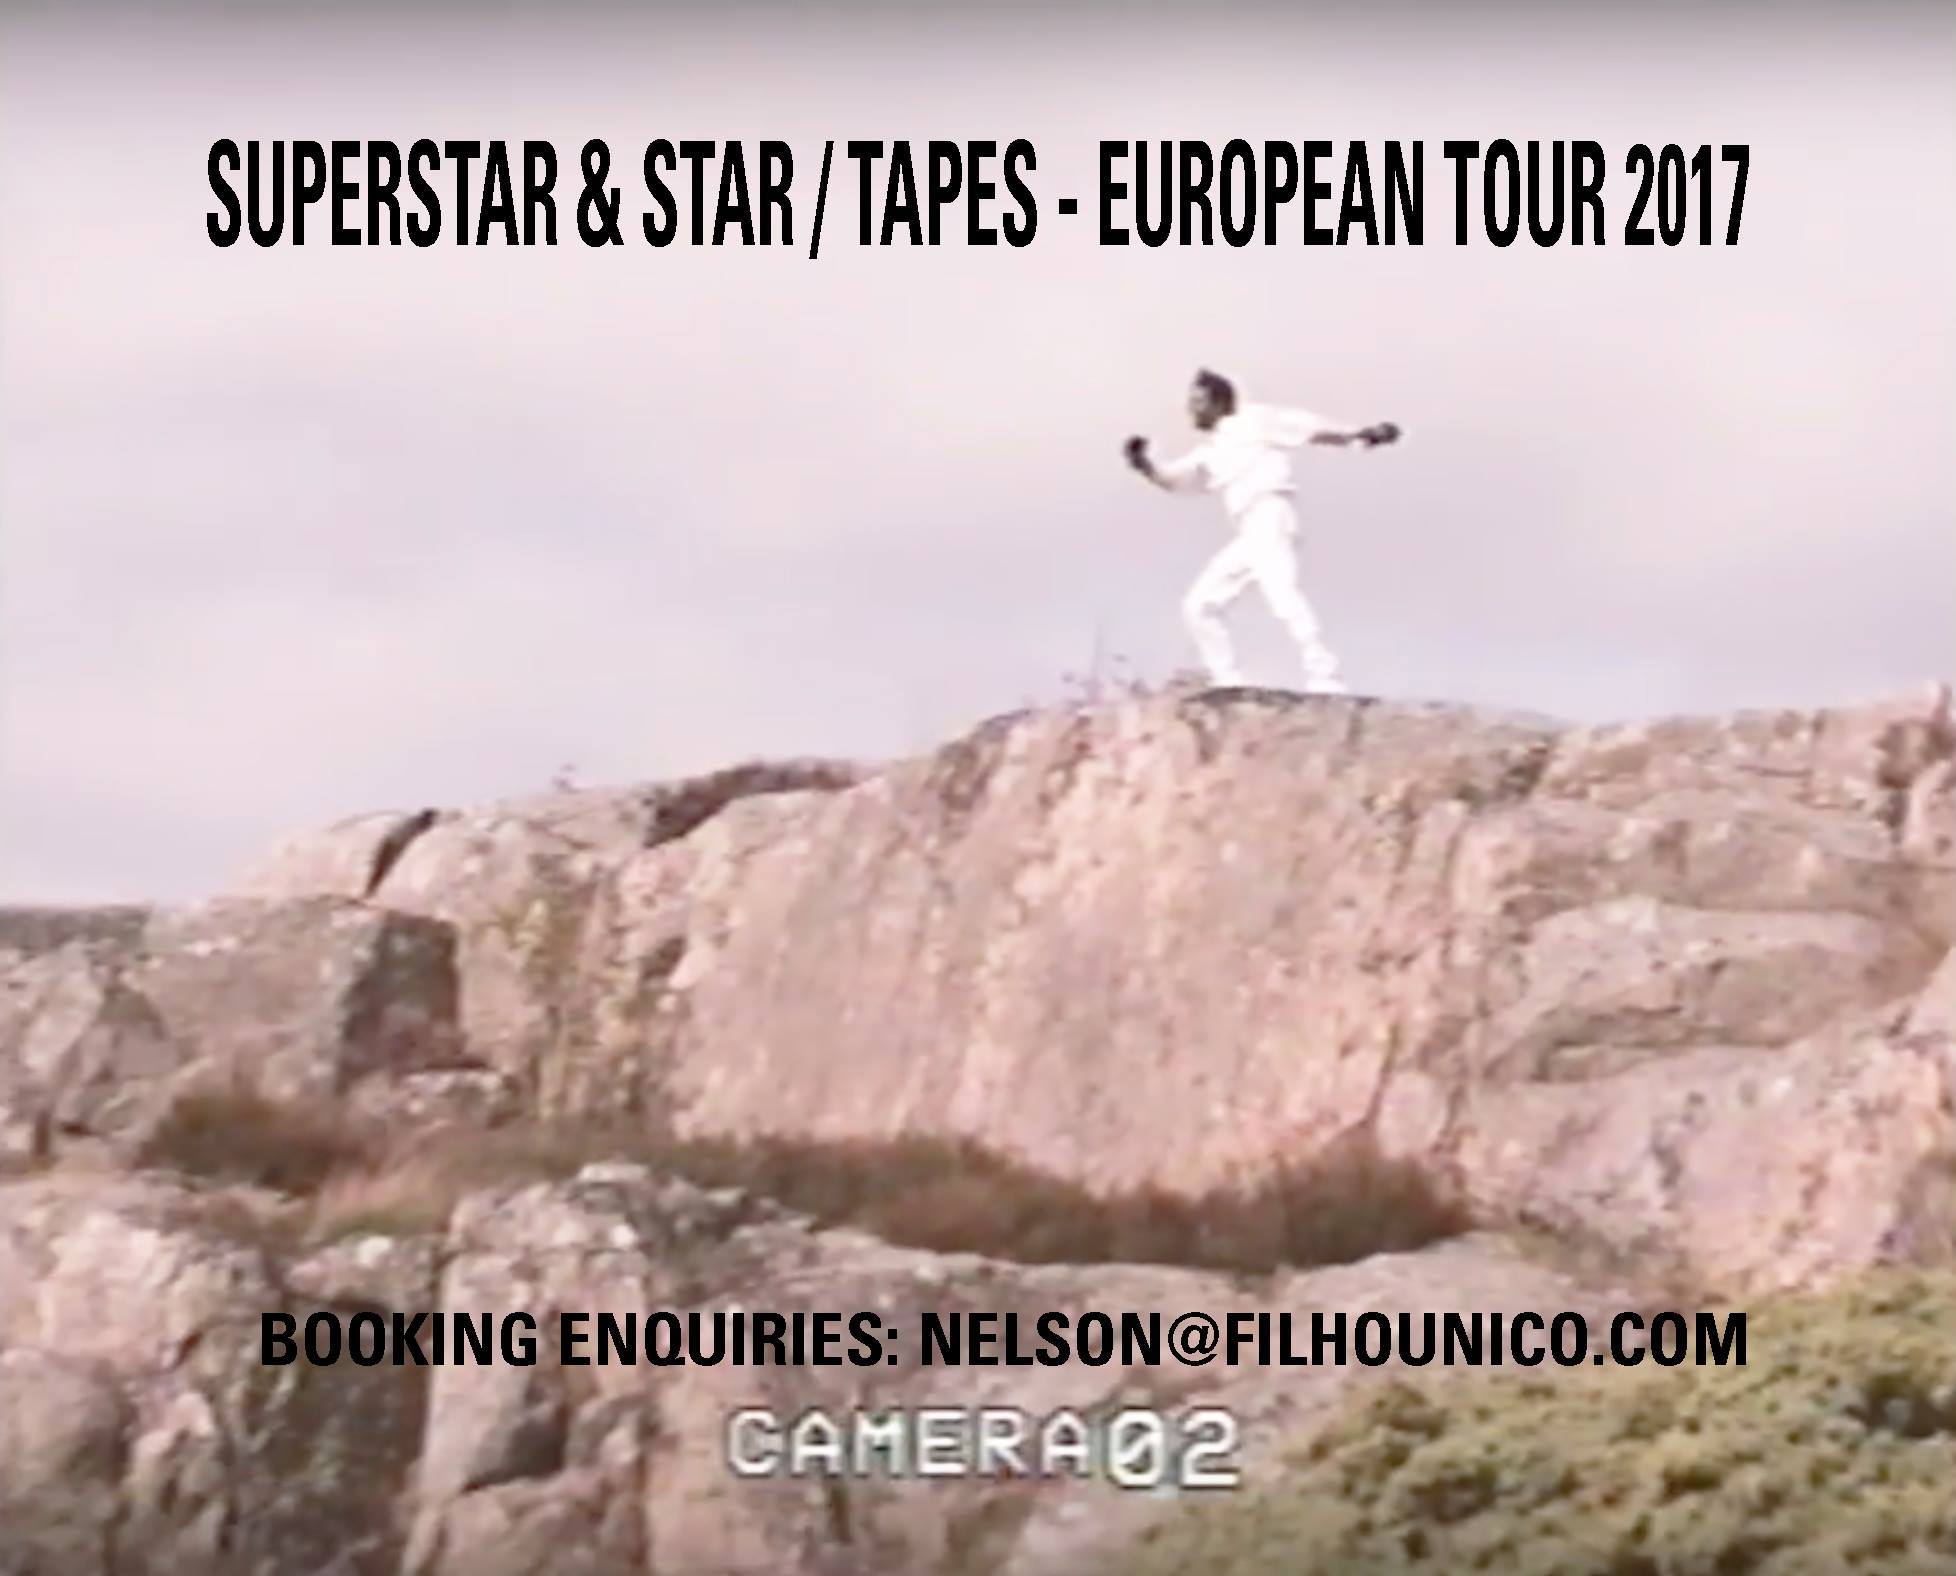 Tapes vs Superstar & Star